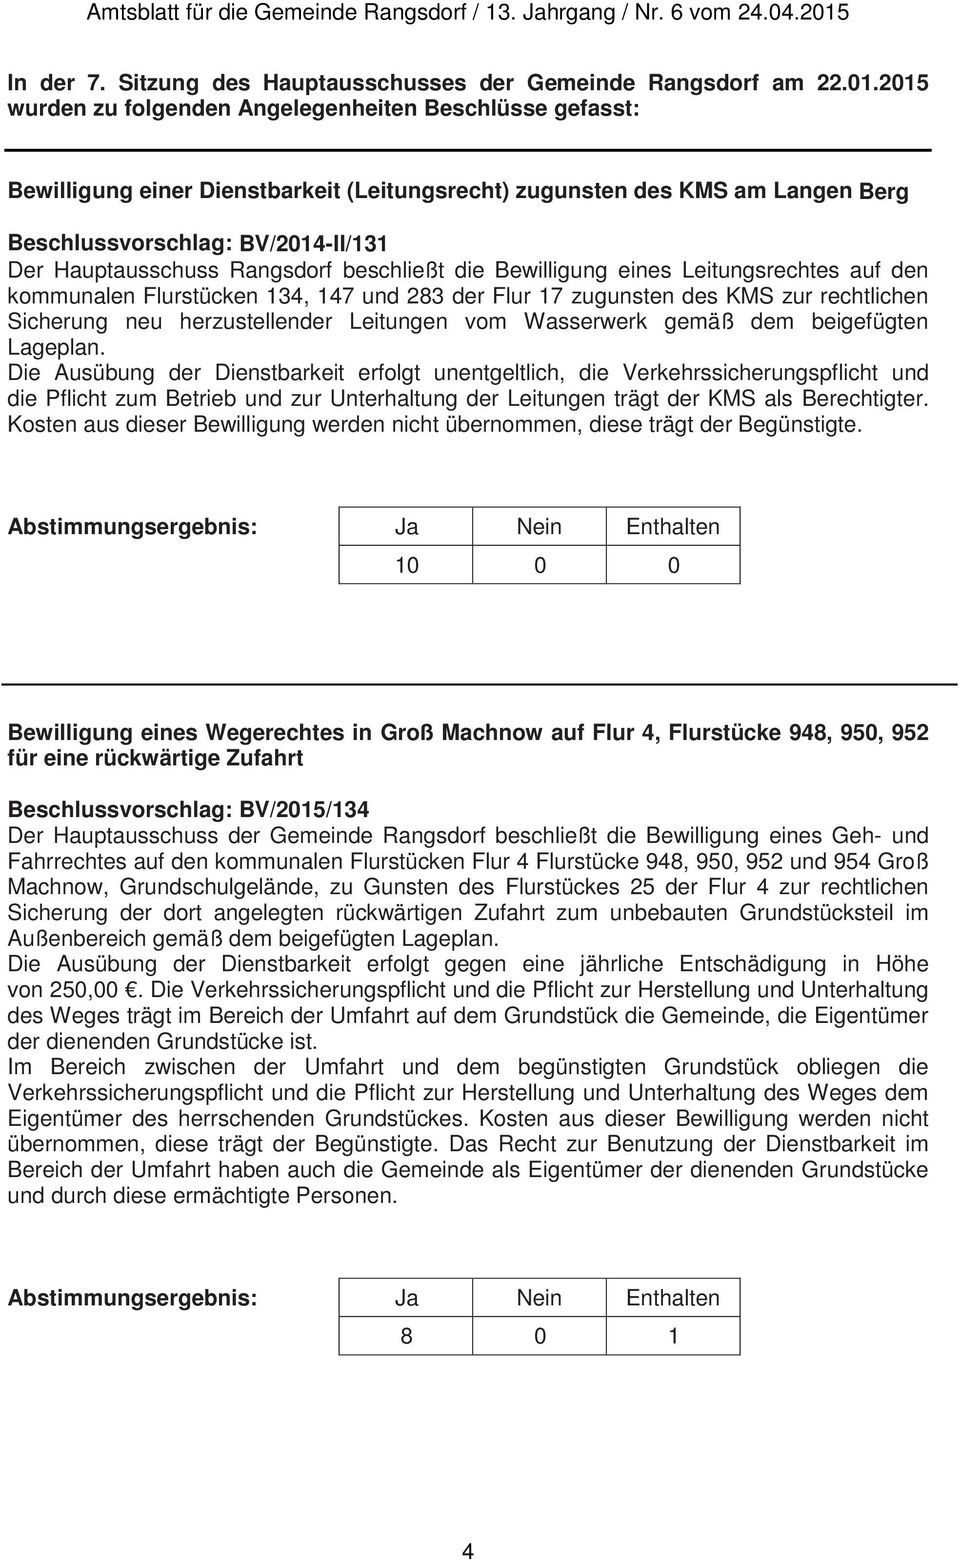 Rangsdorf beschließt die Bewilligung eines Leitungsrechtes auf den kommunalen Flurstücken 134, 147 und 283 der Flur 17 zugunsten des KMS zur rechtlichen Sicherung neu herzustellender Leitungen vom